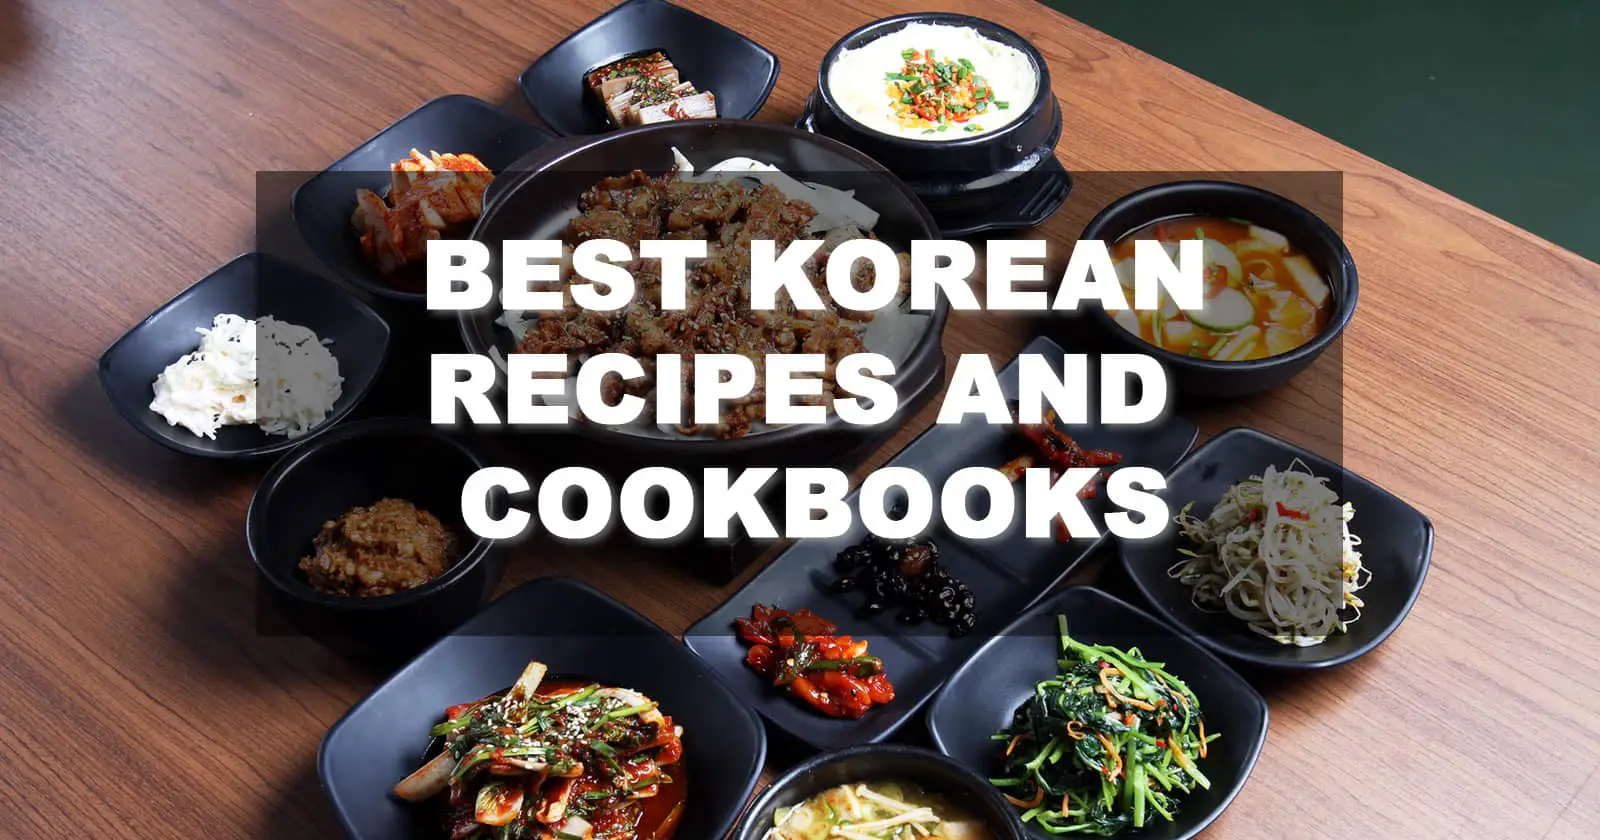 best korean cookbooks recipes